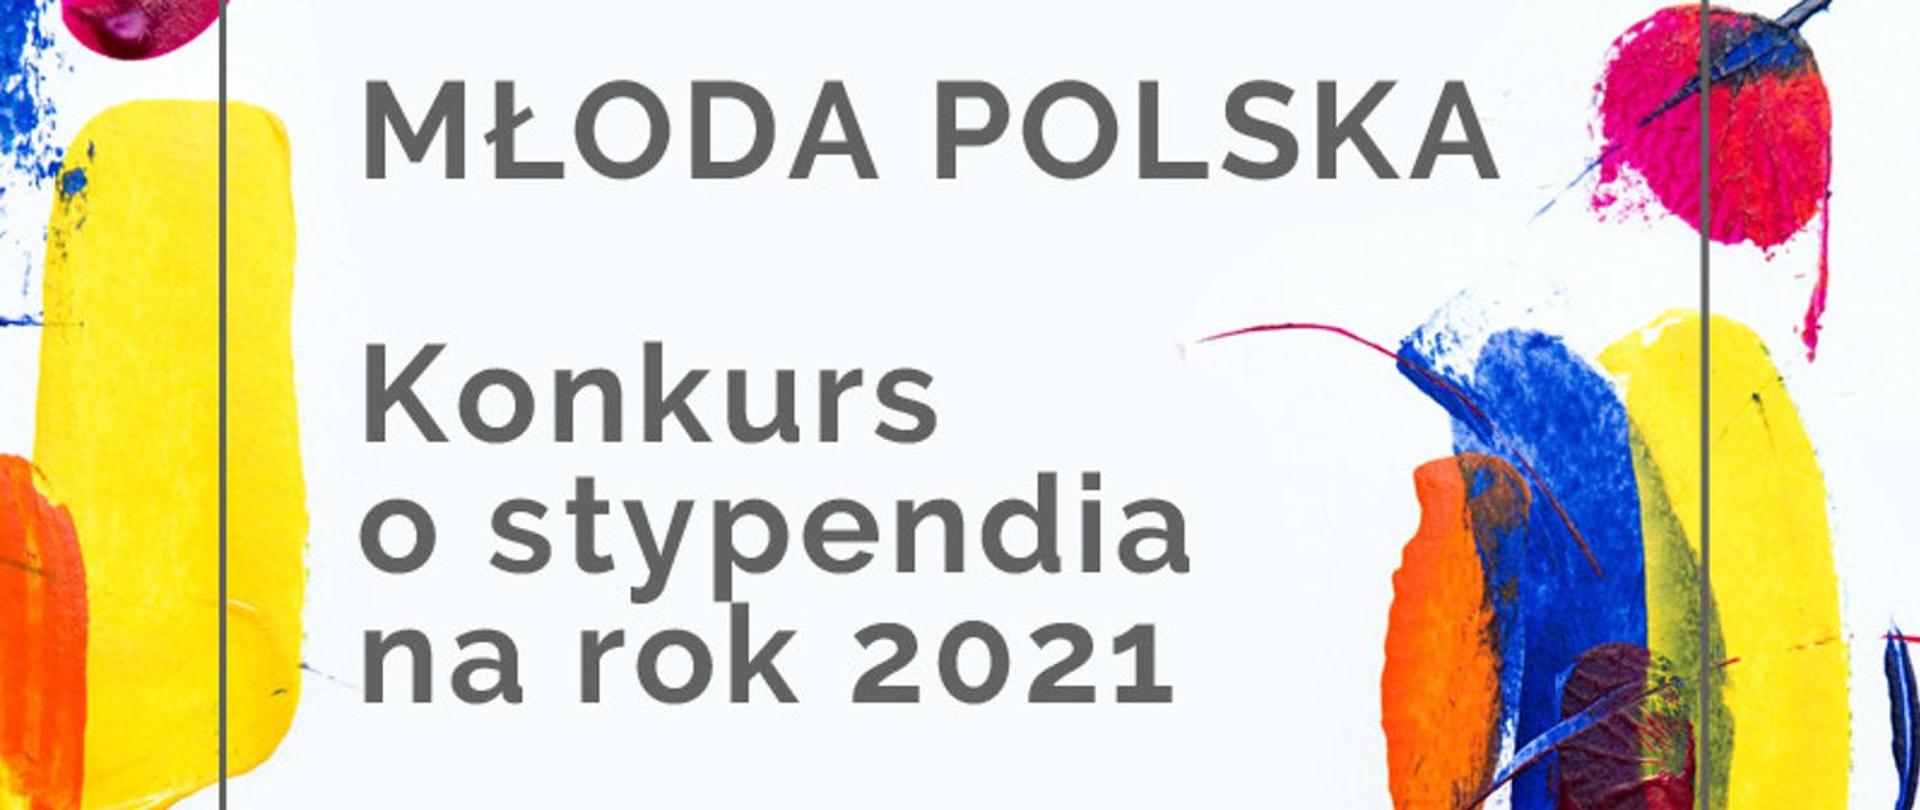 Rozpoczął się nabór wniosków do Programu Młoda Polska